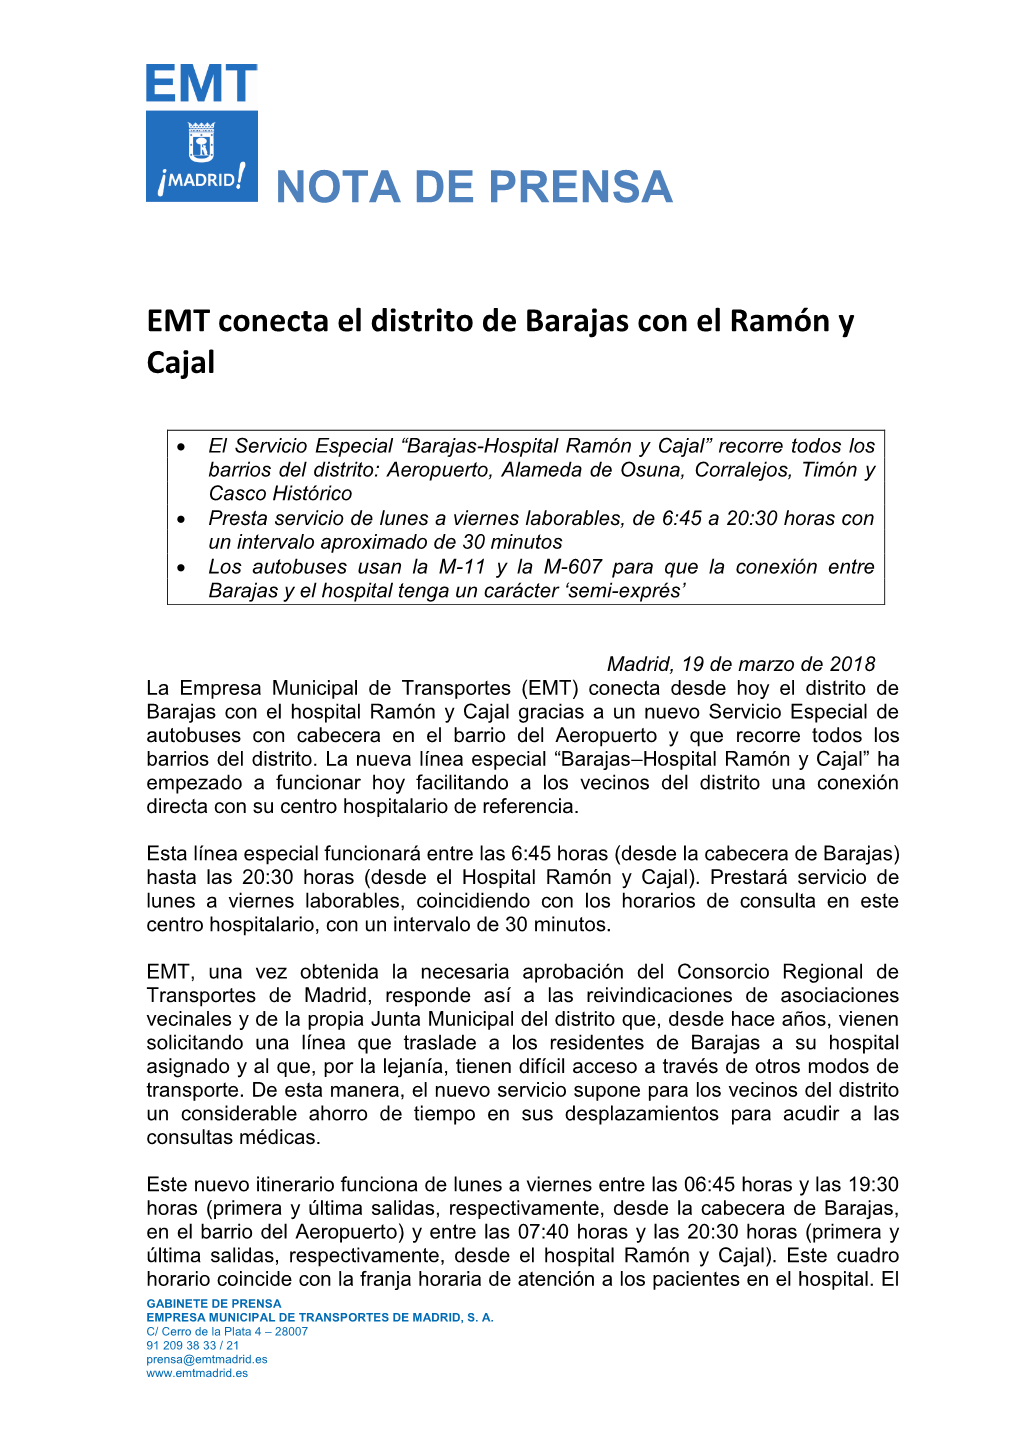 EMT Conecta El Distrito De Barajas Con El Ramón Y Cajal